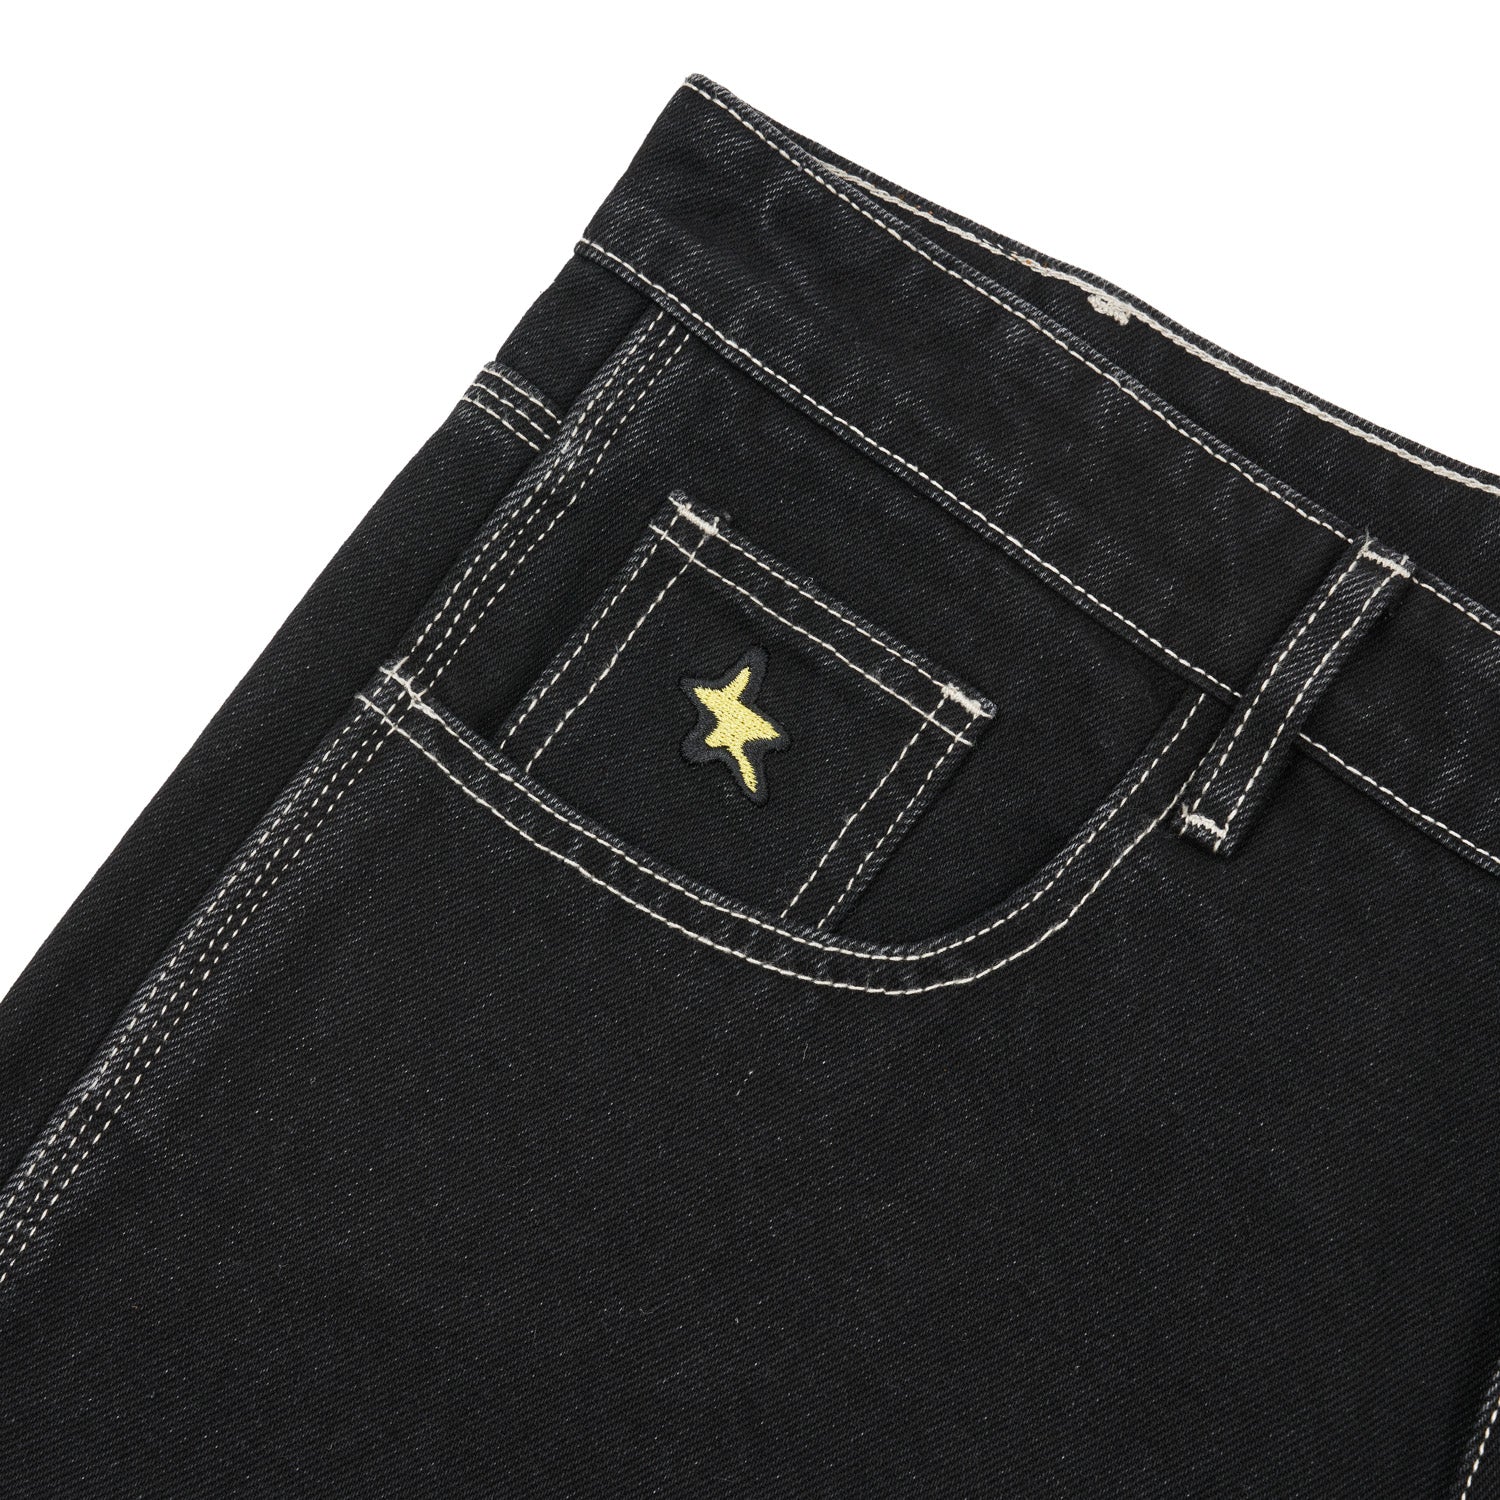 OJCGM Denim Jeans, Washed Black